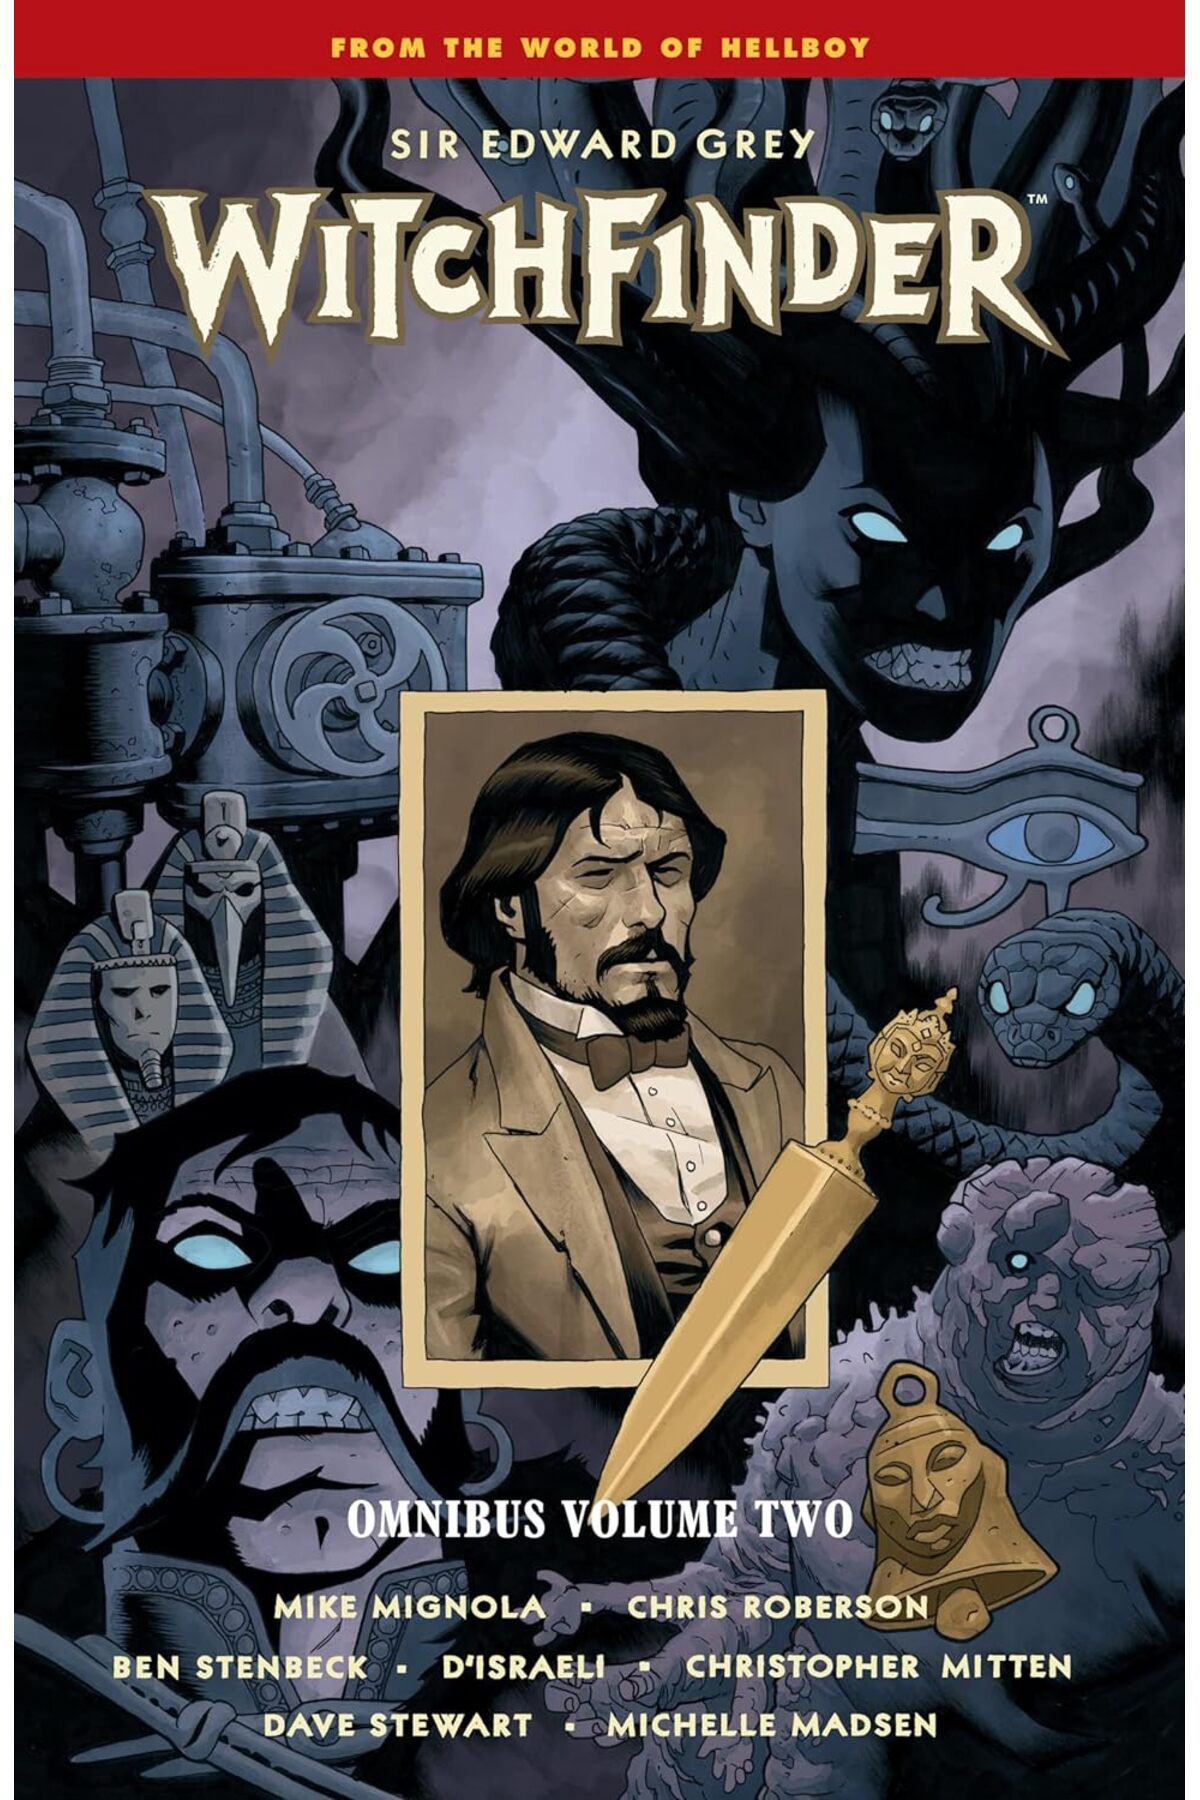 MARVEL Witchfinder Omnibus Volume 2 - Mike Mignola, Chris Roberson